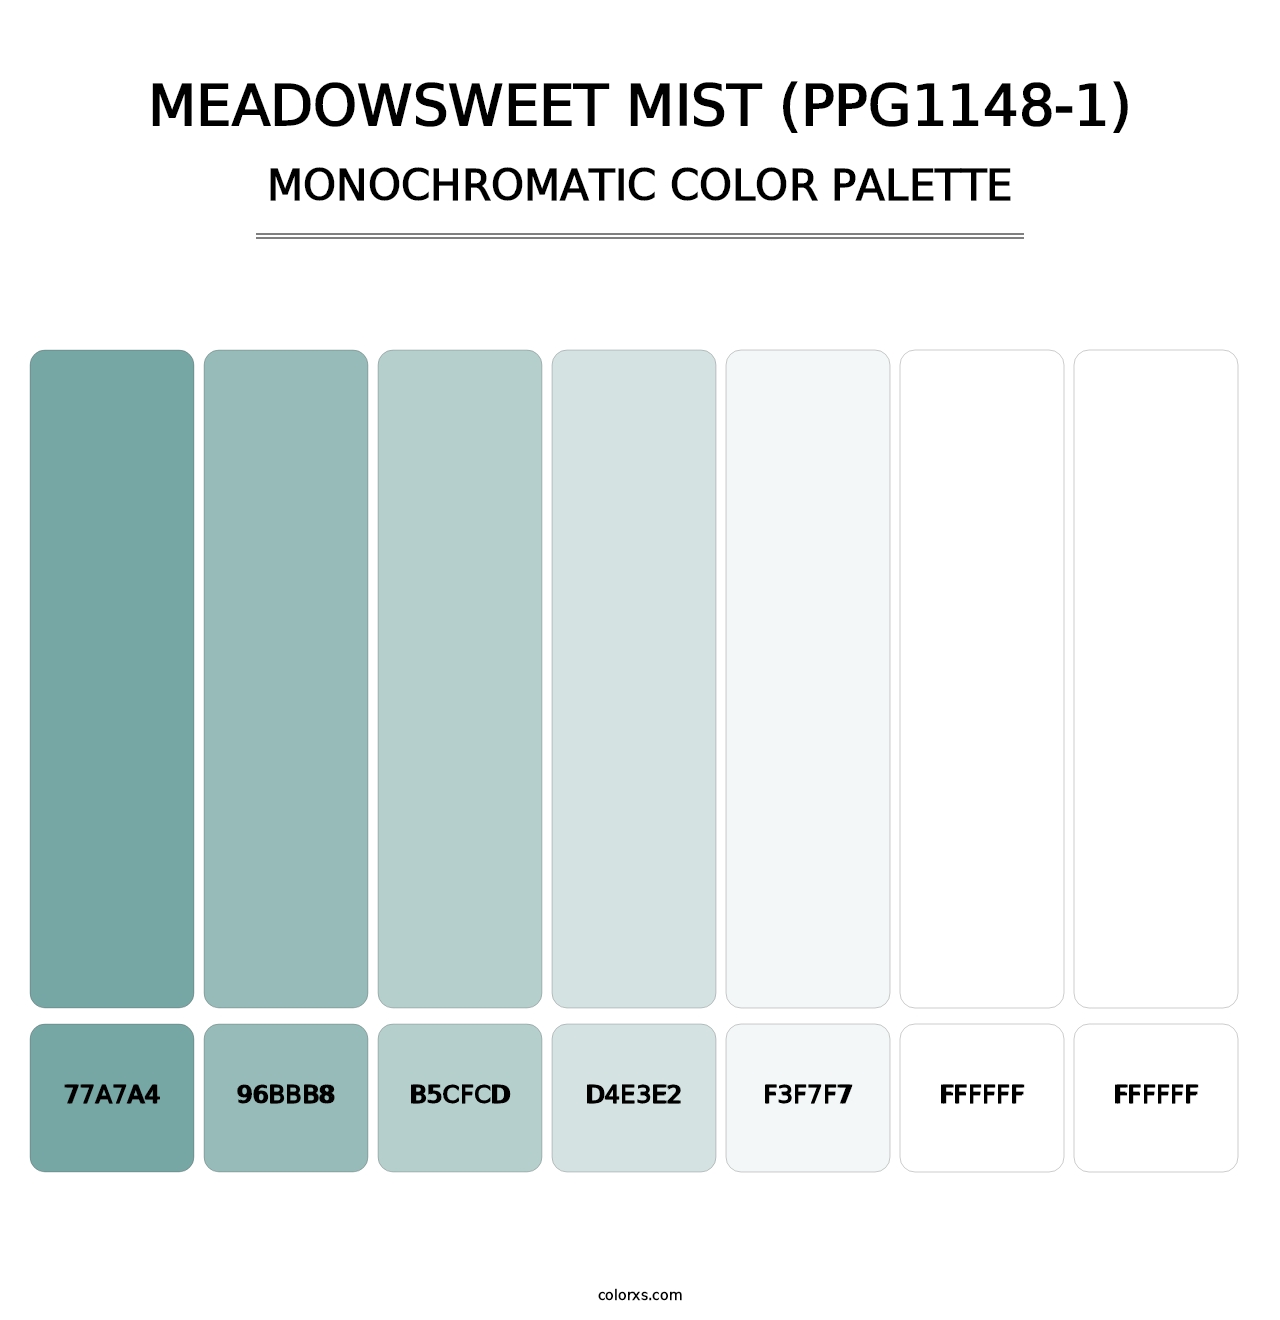 Meadowsweet Mist (PPG1148-1) - Monochromatic Color Palette